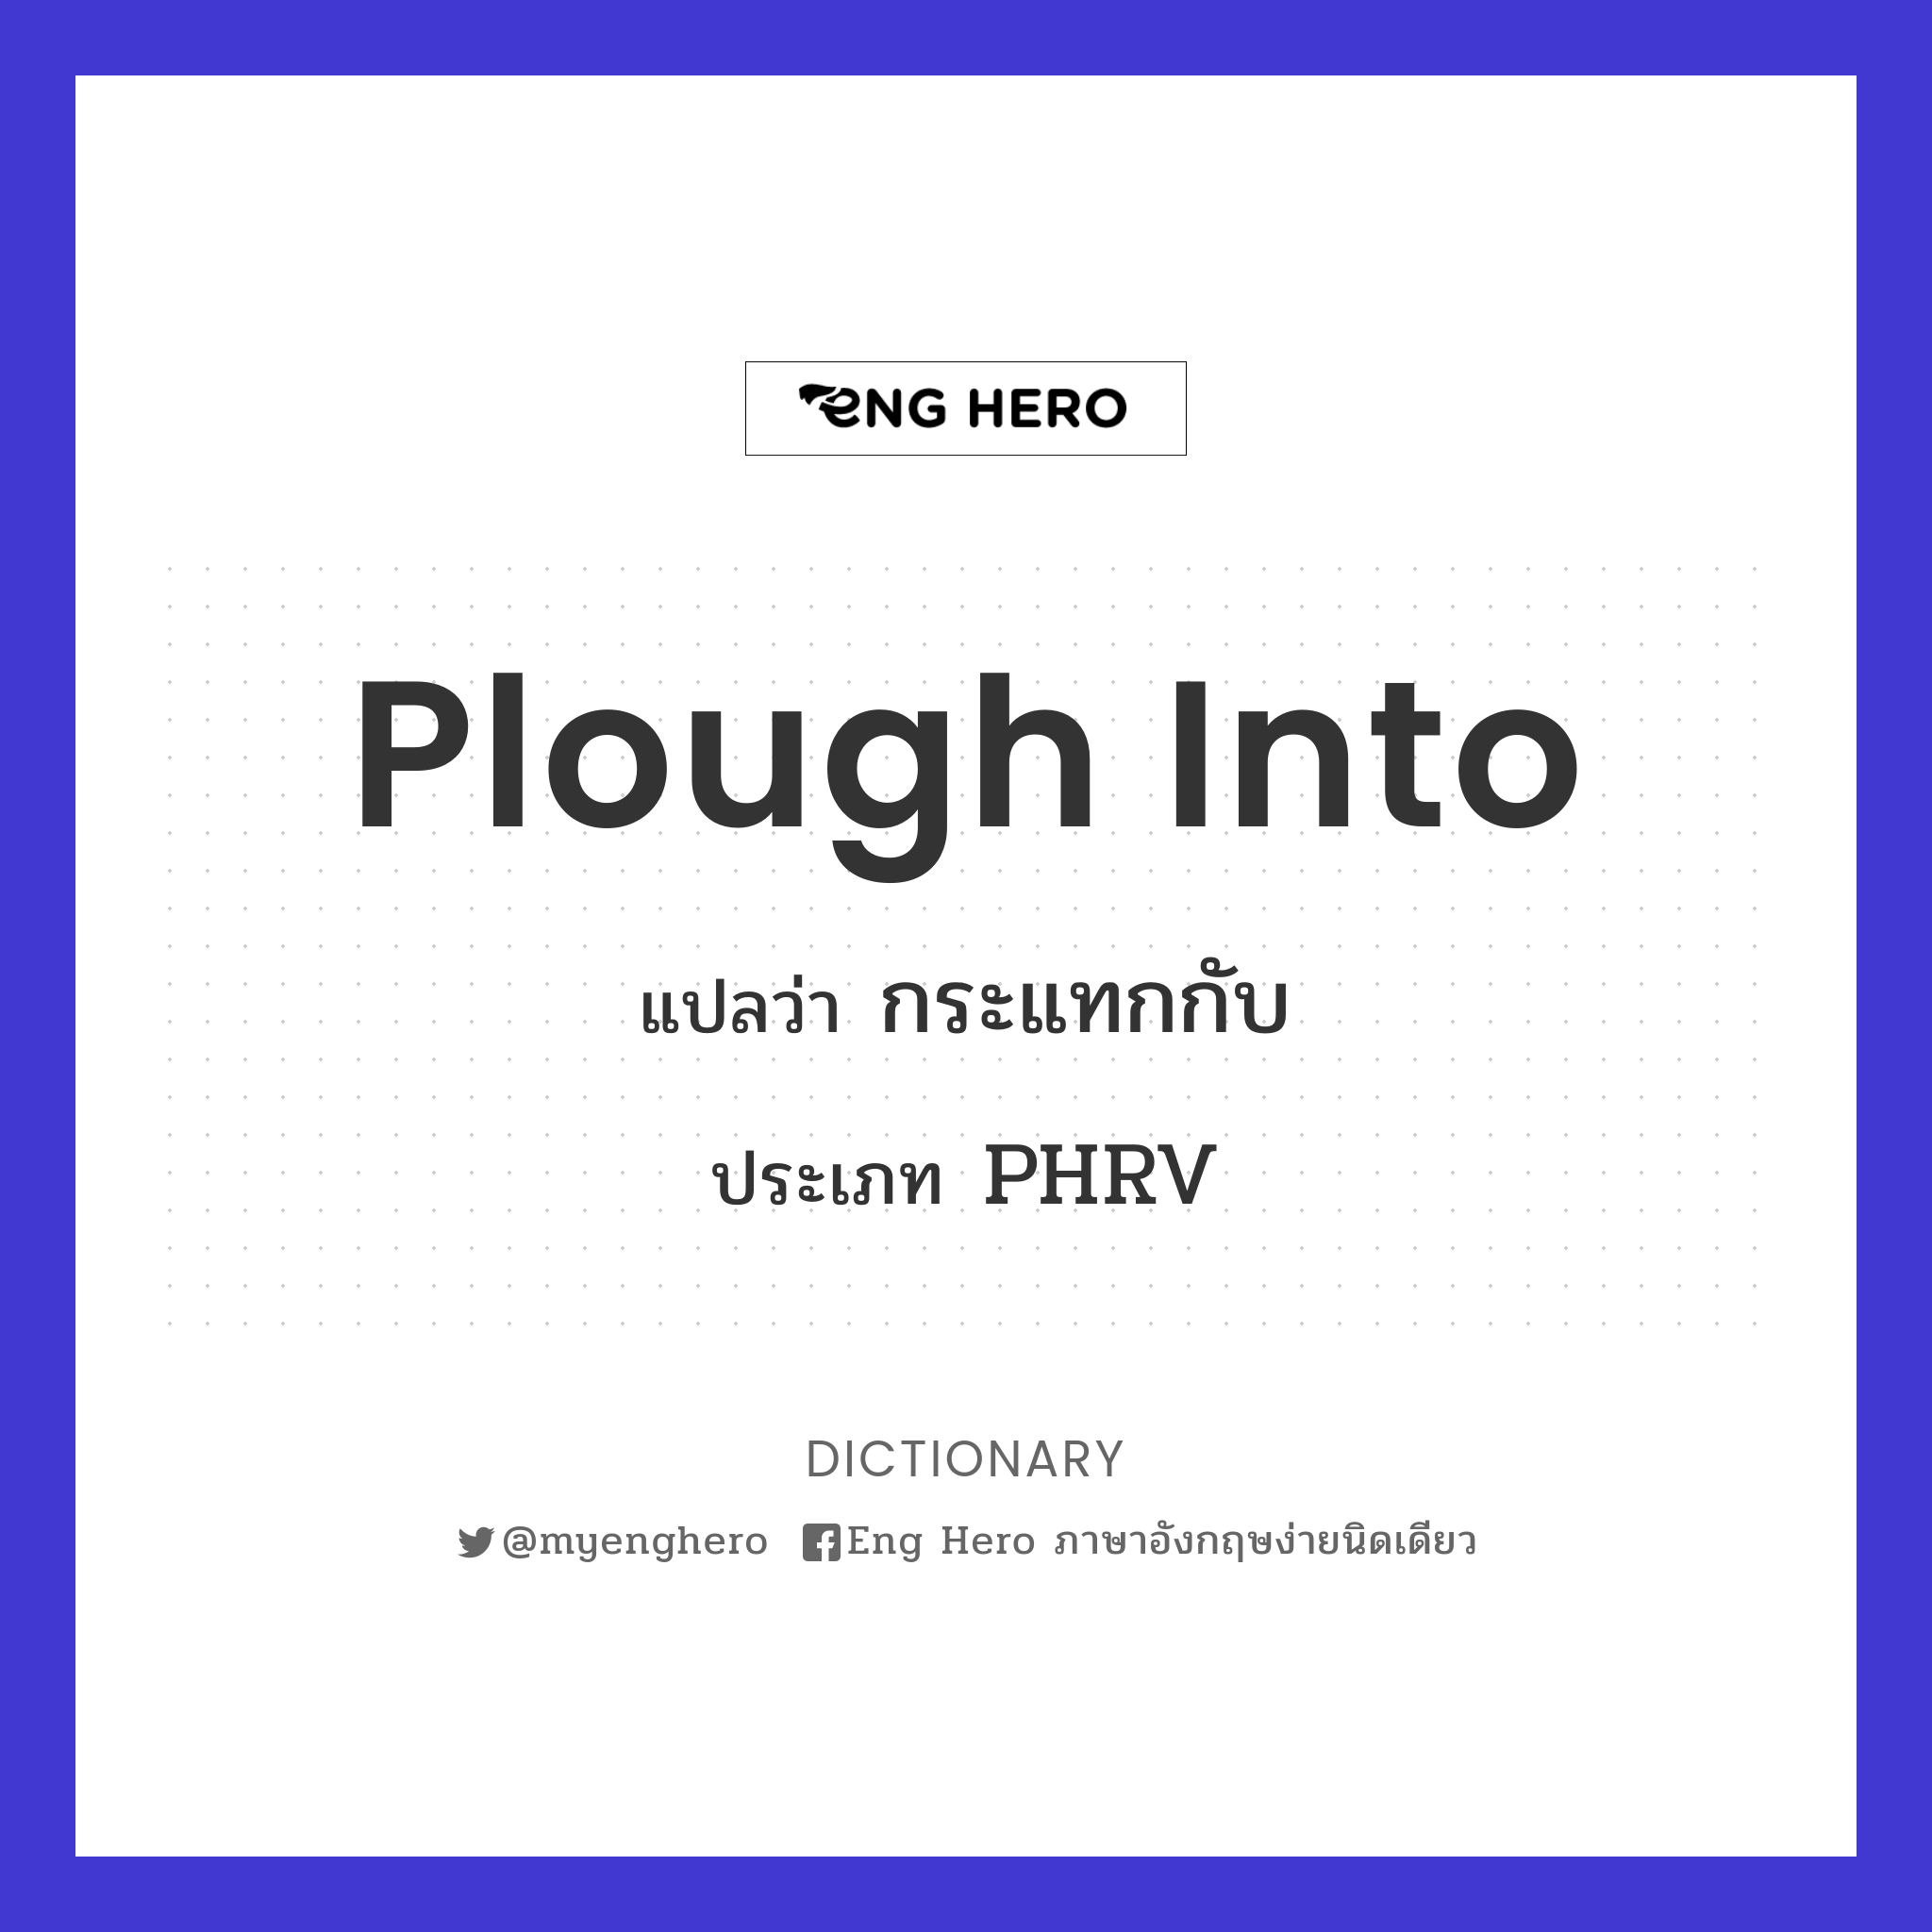 plough into